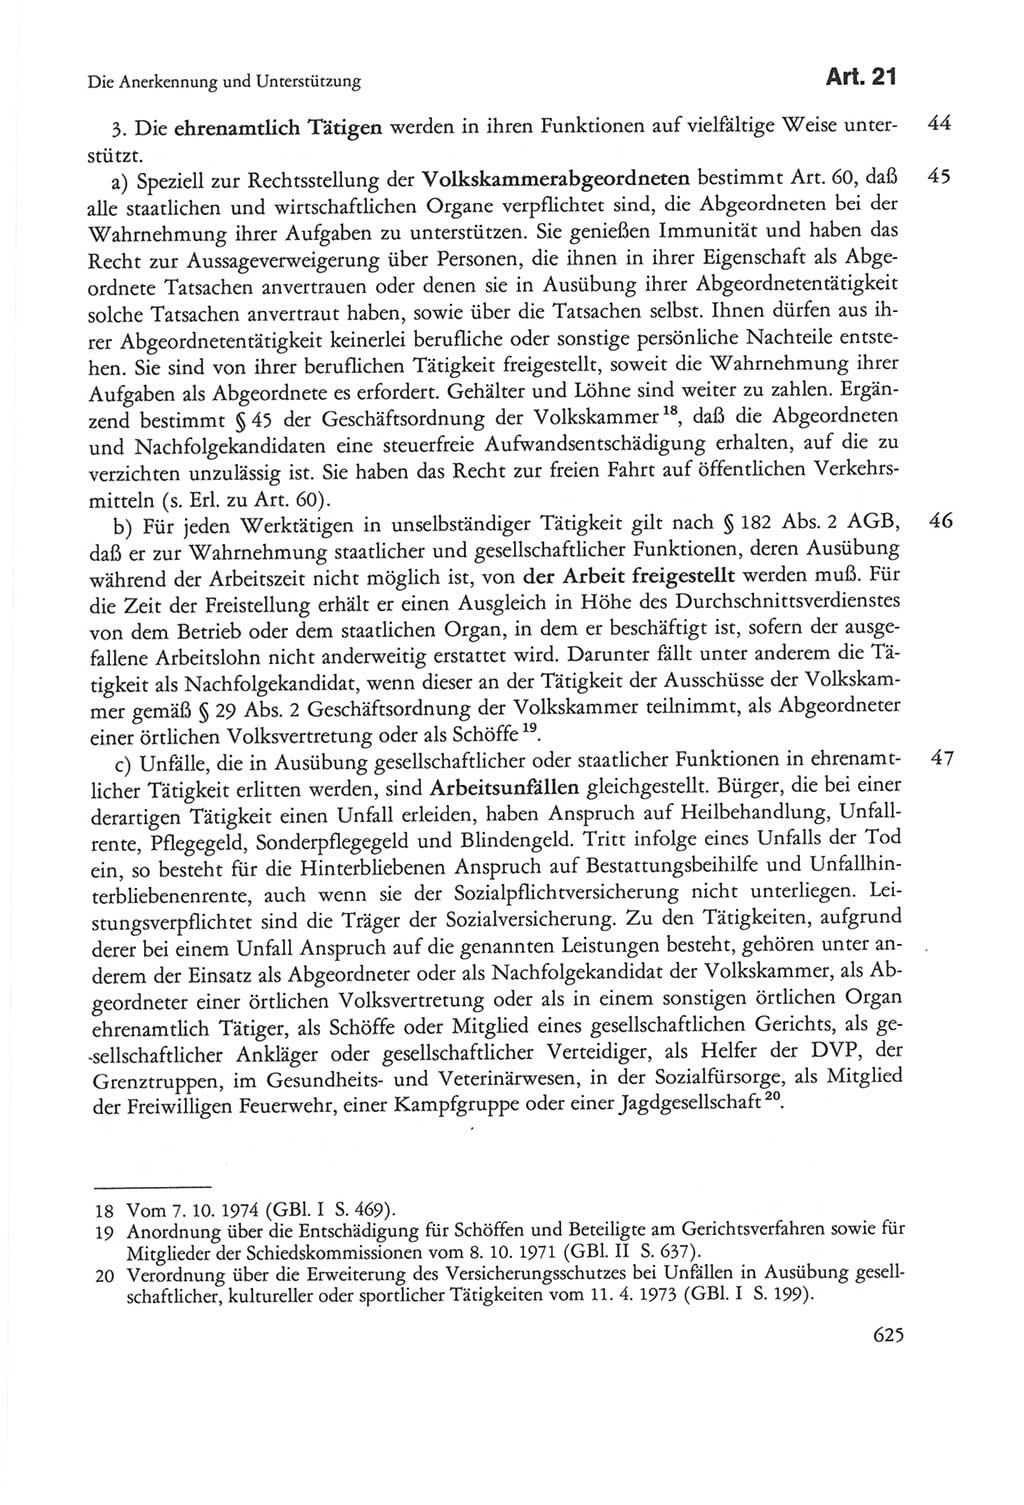 Die sozialistische Verfassung der Deutschen Demokratischen Republik (DDR), Kommentar 1982, Seite 625 (Soz. Verf. DDR Komm. 1982, S. 625)